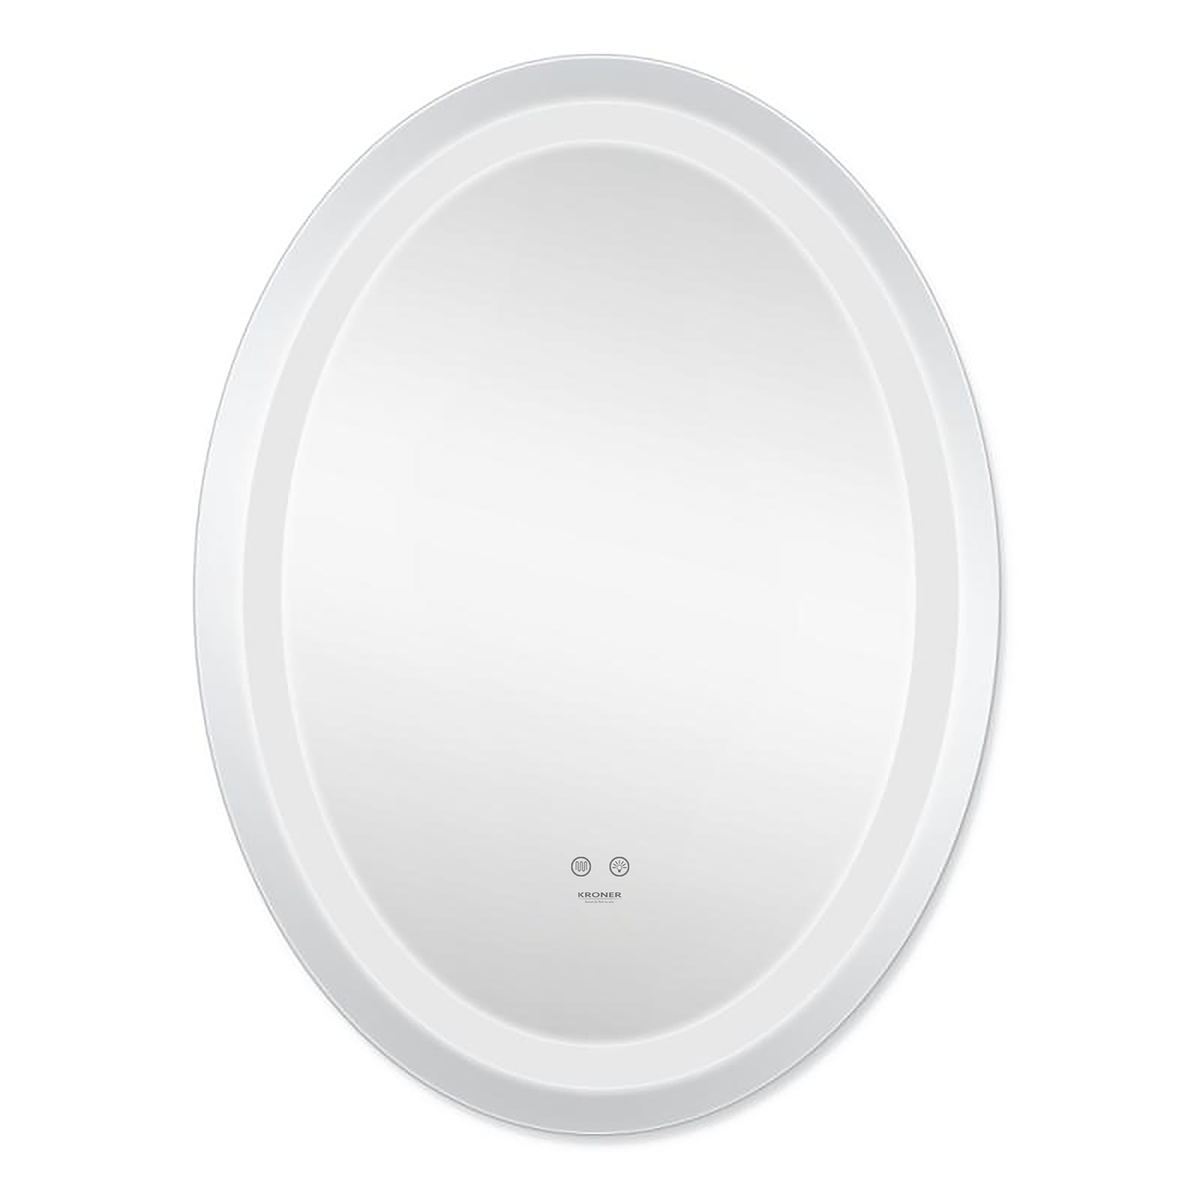 Зеркало в ванную KRONER Spiegel 70x50см c подсветкой сенсорное включение антизапотевание овальное CV030040